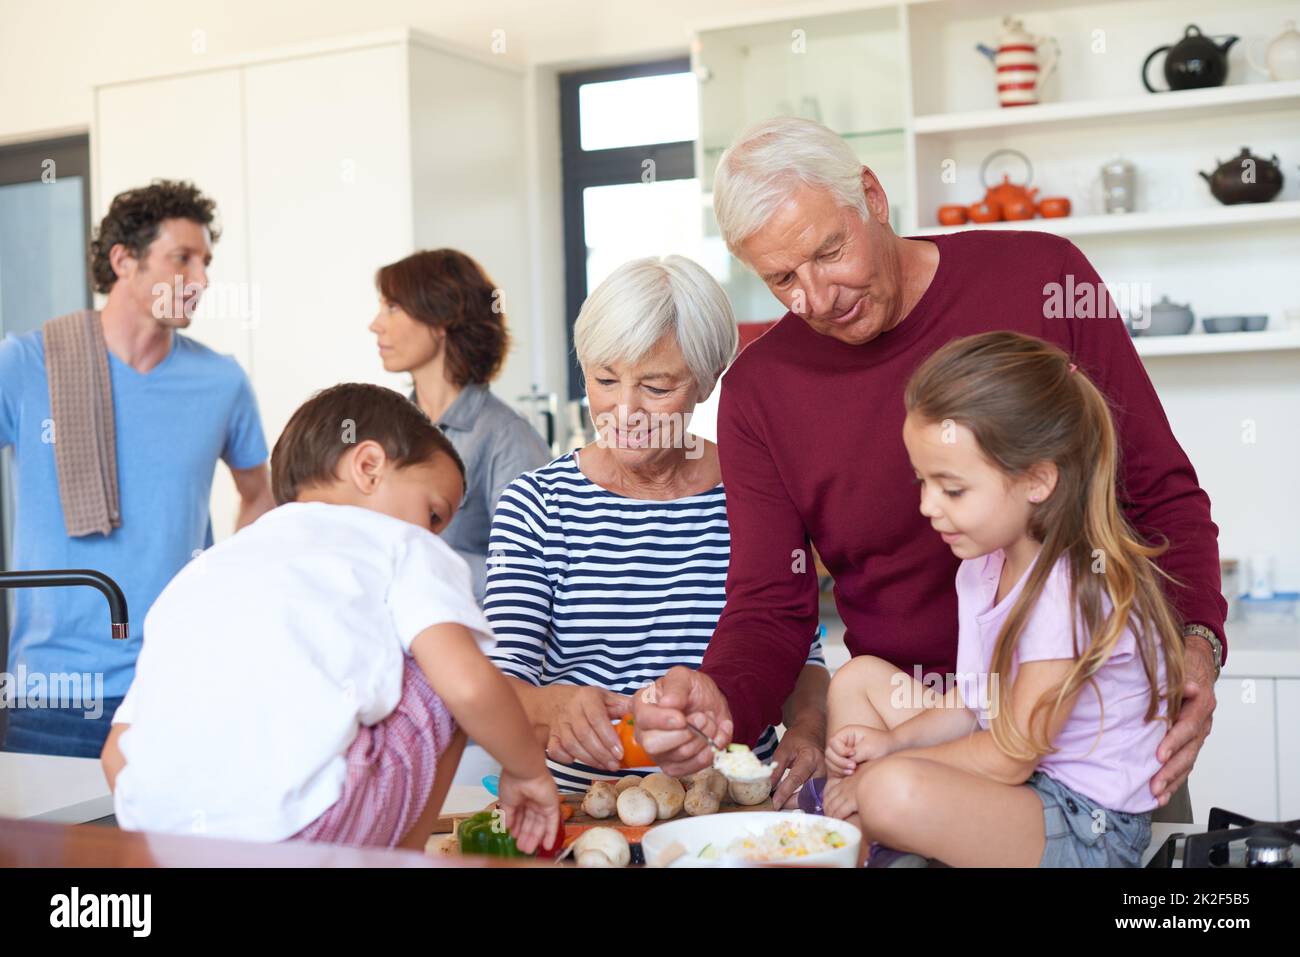 Das Essen ist das Herzstück dieser Familie. Aufnahme von Großeltern, die mit ihren Enkeln in einer Küche ein Abendessen zubereiten. Stockfoto